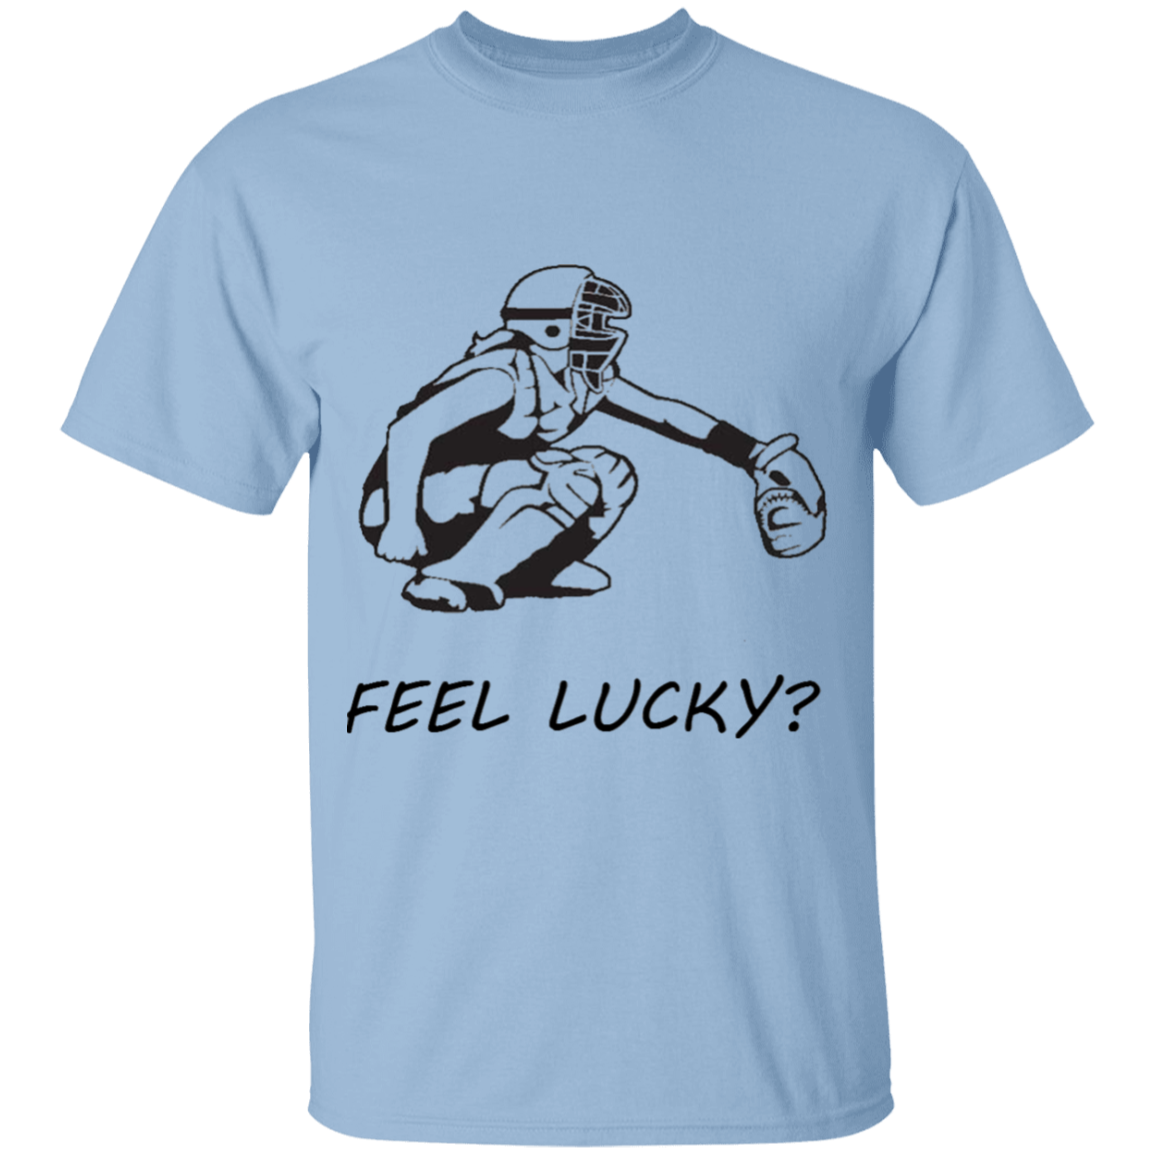 Softball Catcher - feel lucky - T-Shirt (youth)